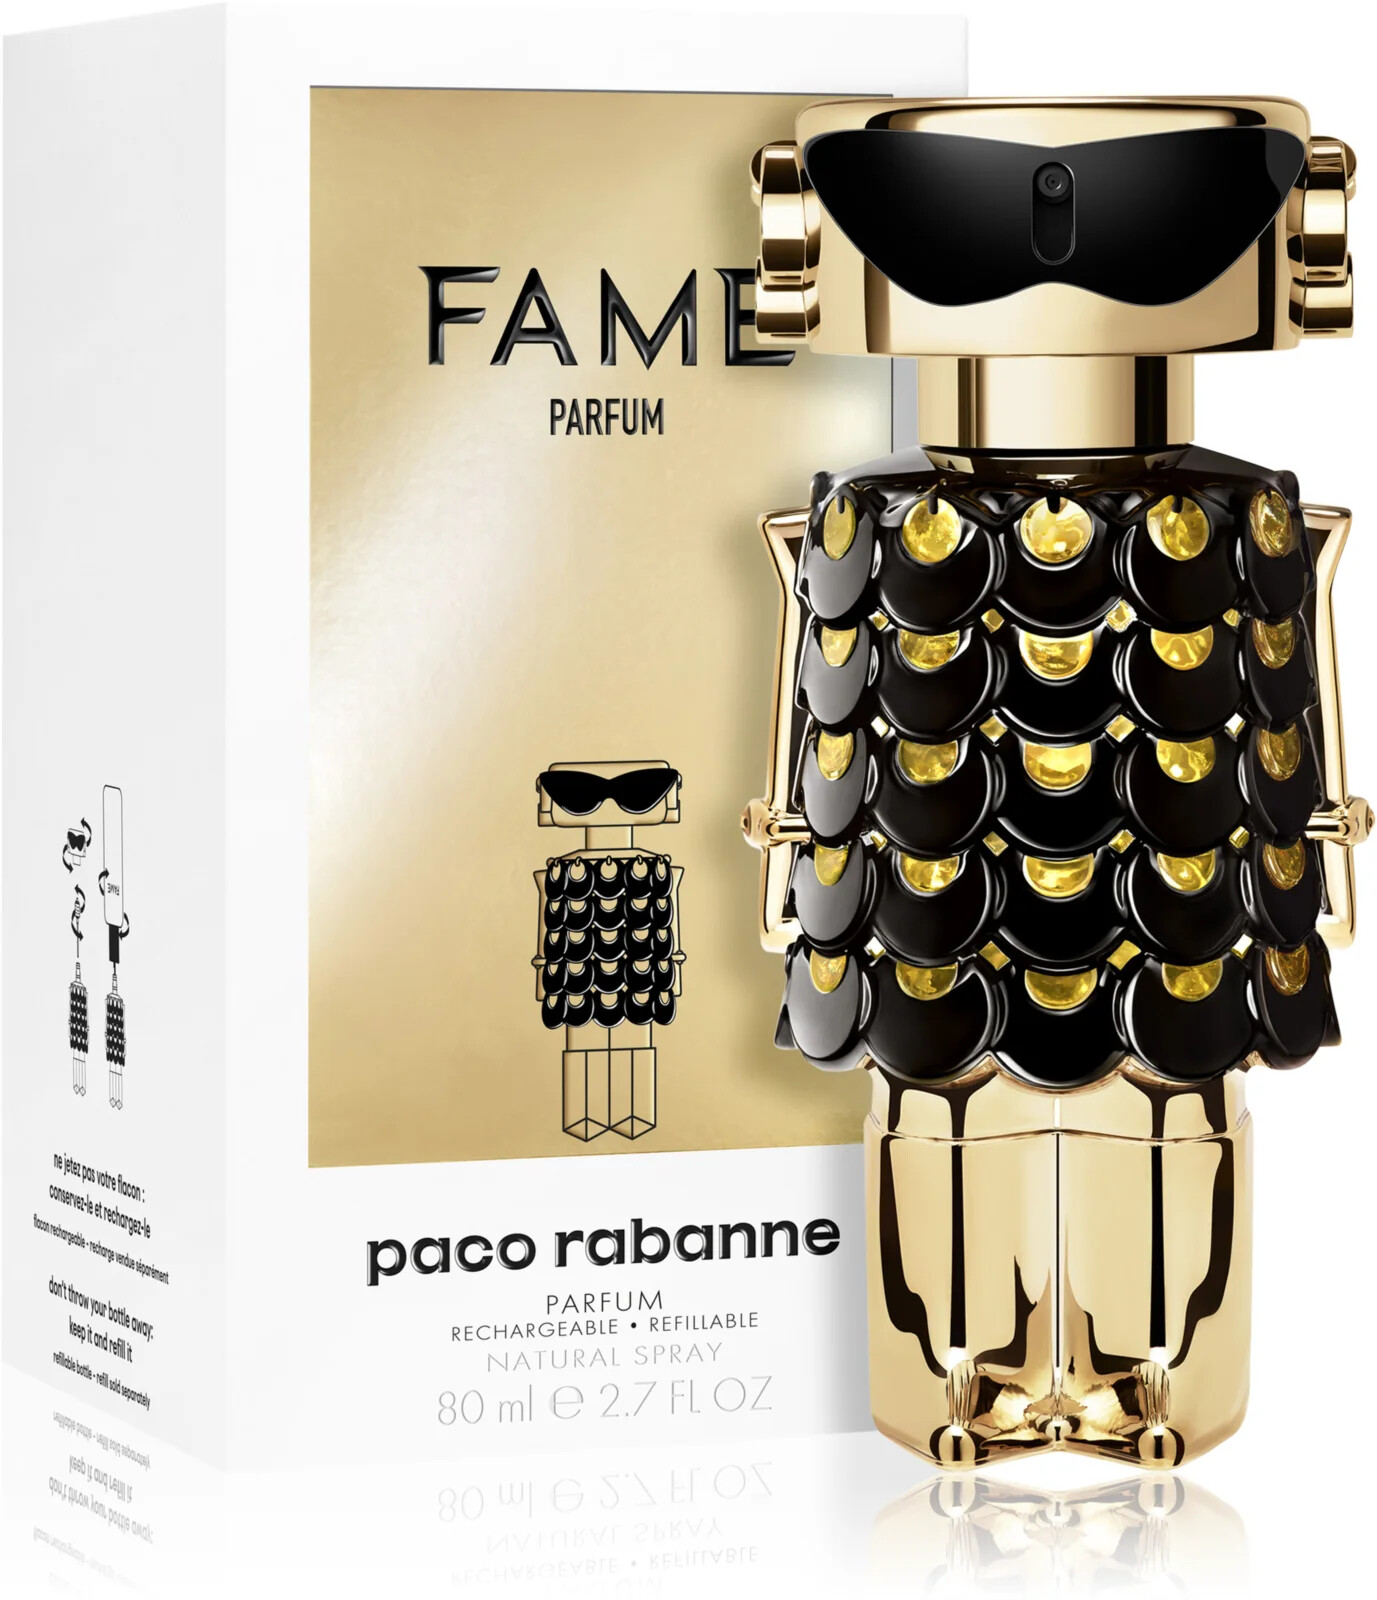 Paco Rabanne Fame Parfum parfém pro ženy 80 ml tester